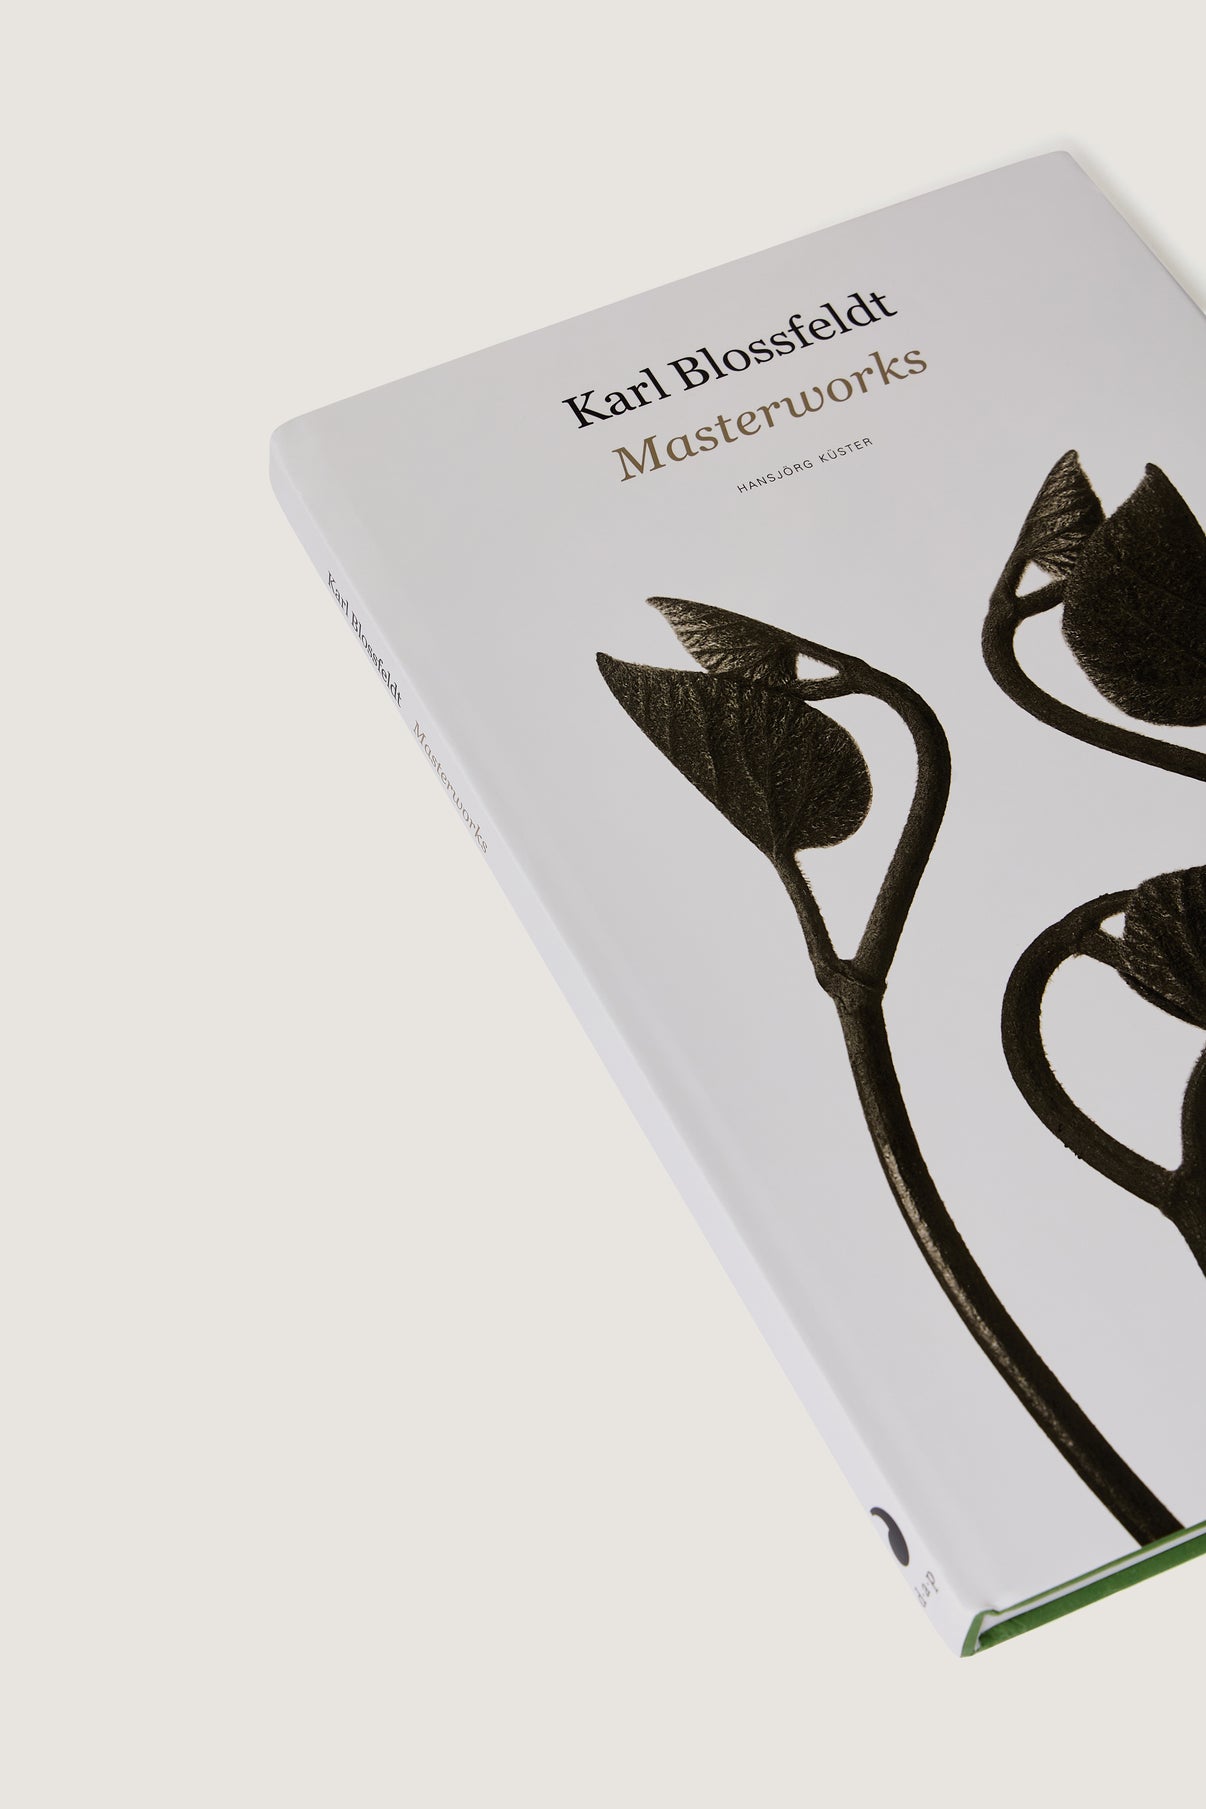 BOOK "KARL BLOSSFELDT : MASTERWORKS" vue 2